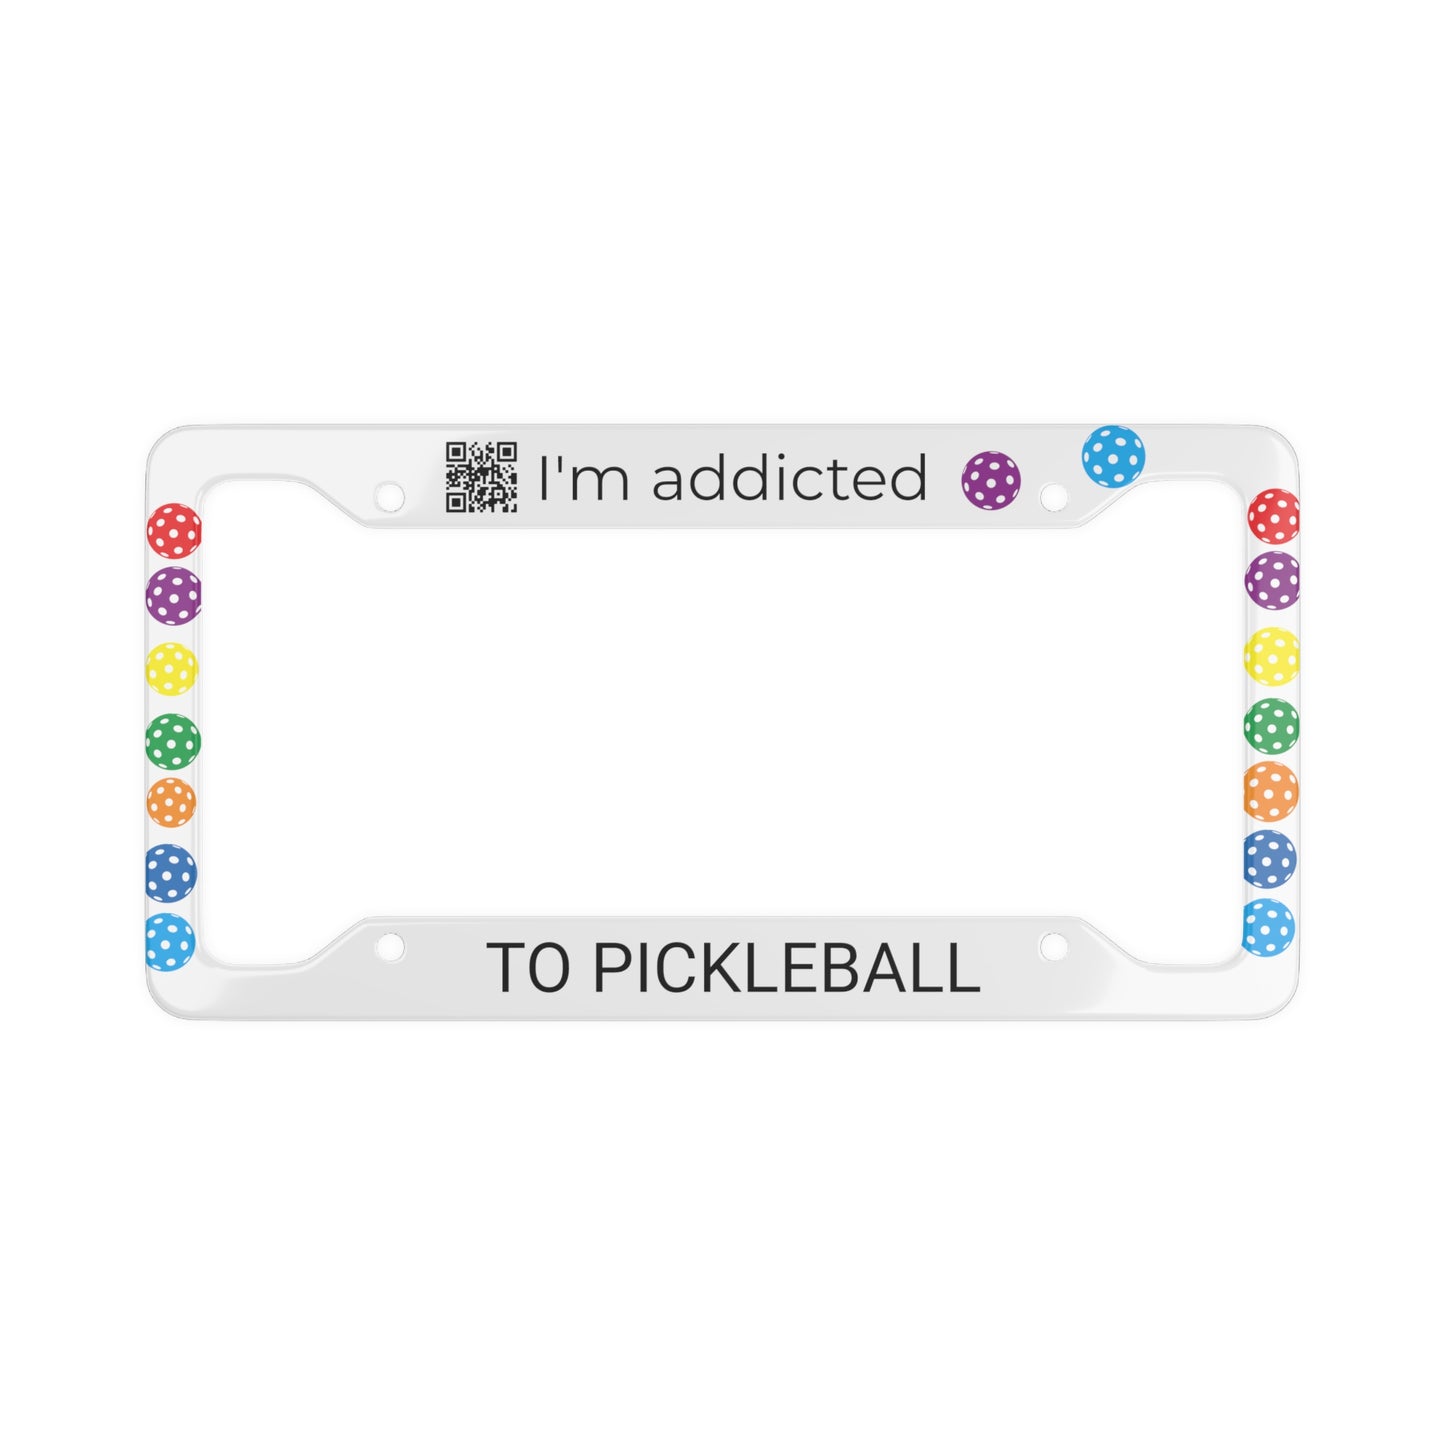 PICKLEBALL License Plate Frame - I'm addicted - TO PICKLEBALL white